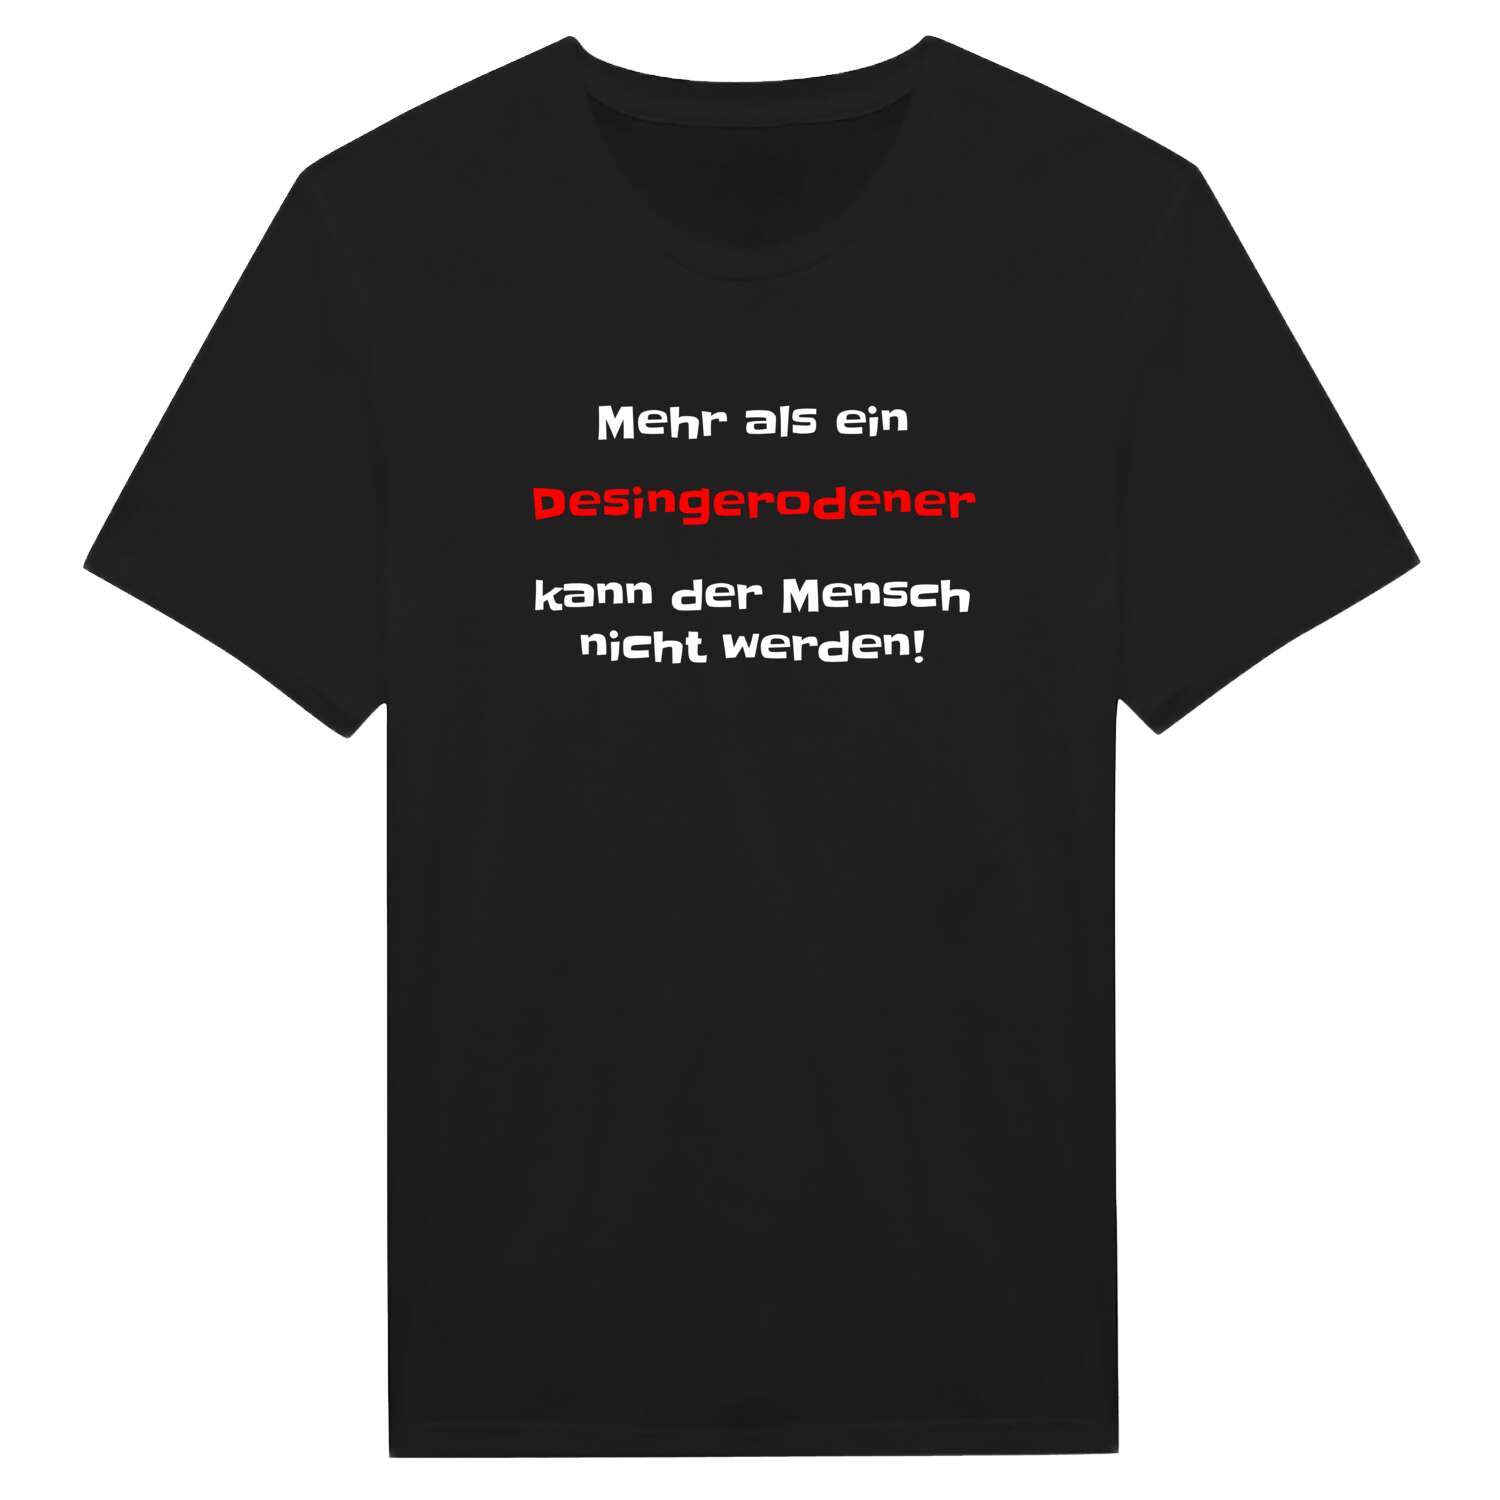 Desingerode T-Shirt »Mehr als ein«